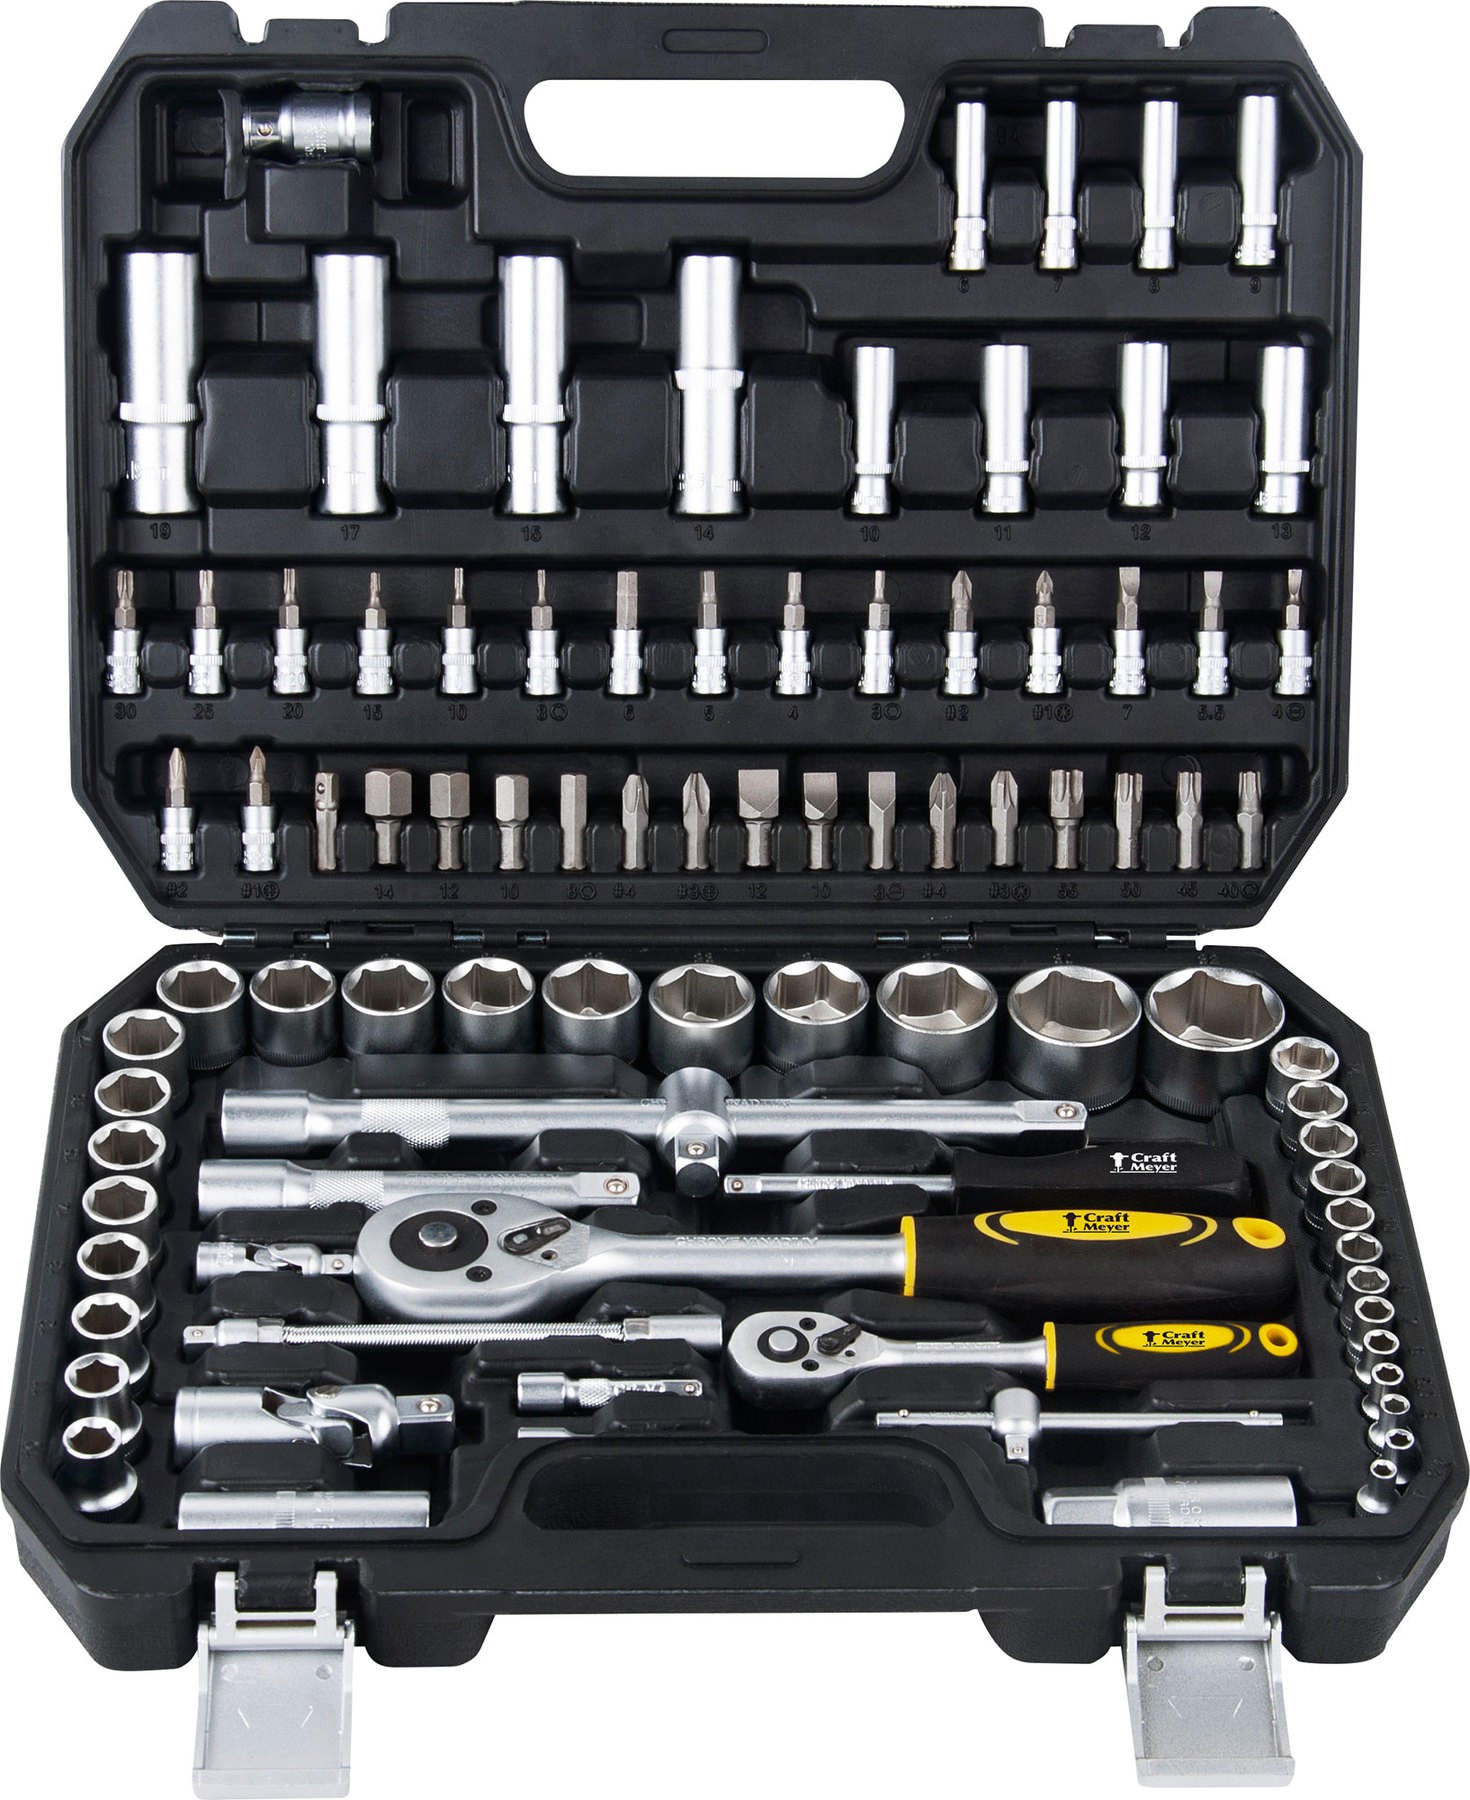 Kit d'outils généraux pour moto, kit d'outils pour atelier, réparation,  coffret de rangement, outil général, clé à douille, jeu d'embouts pour la